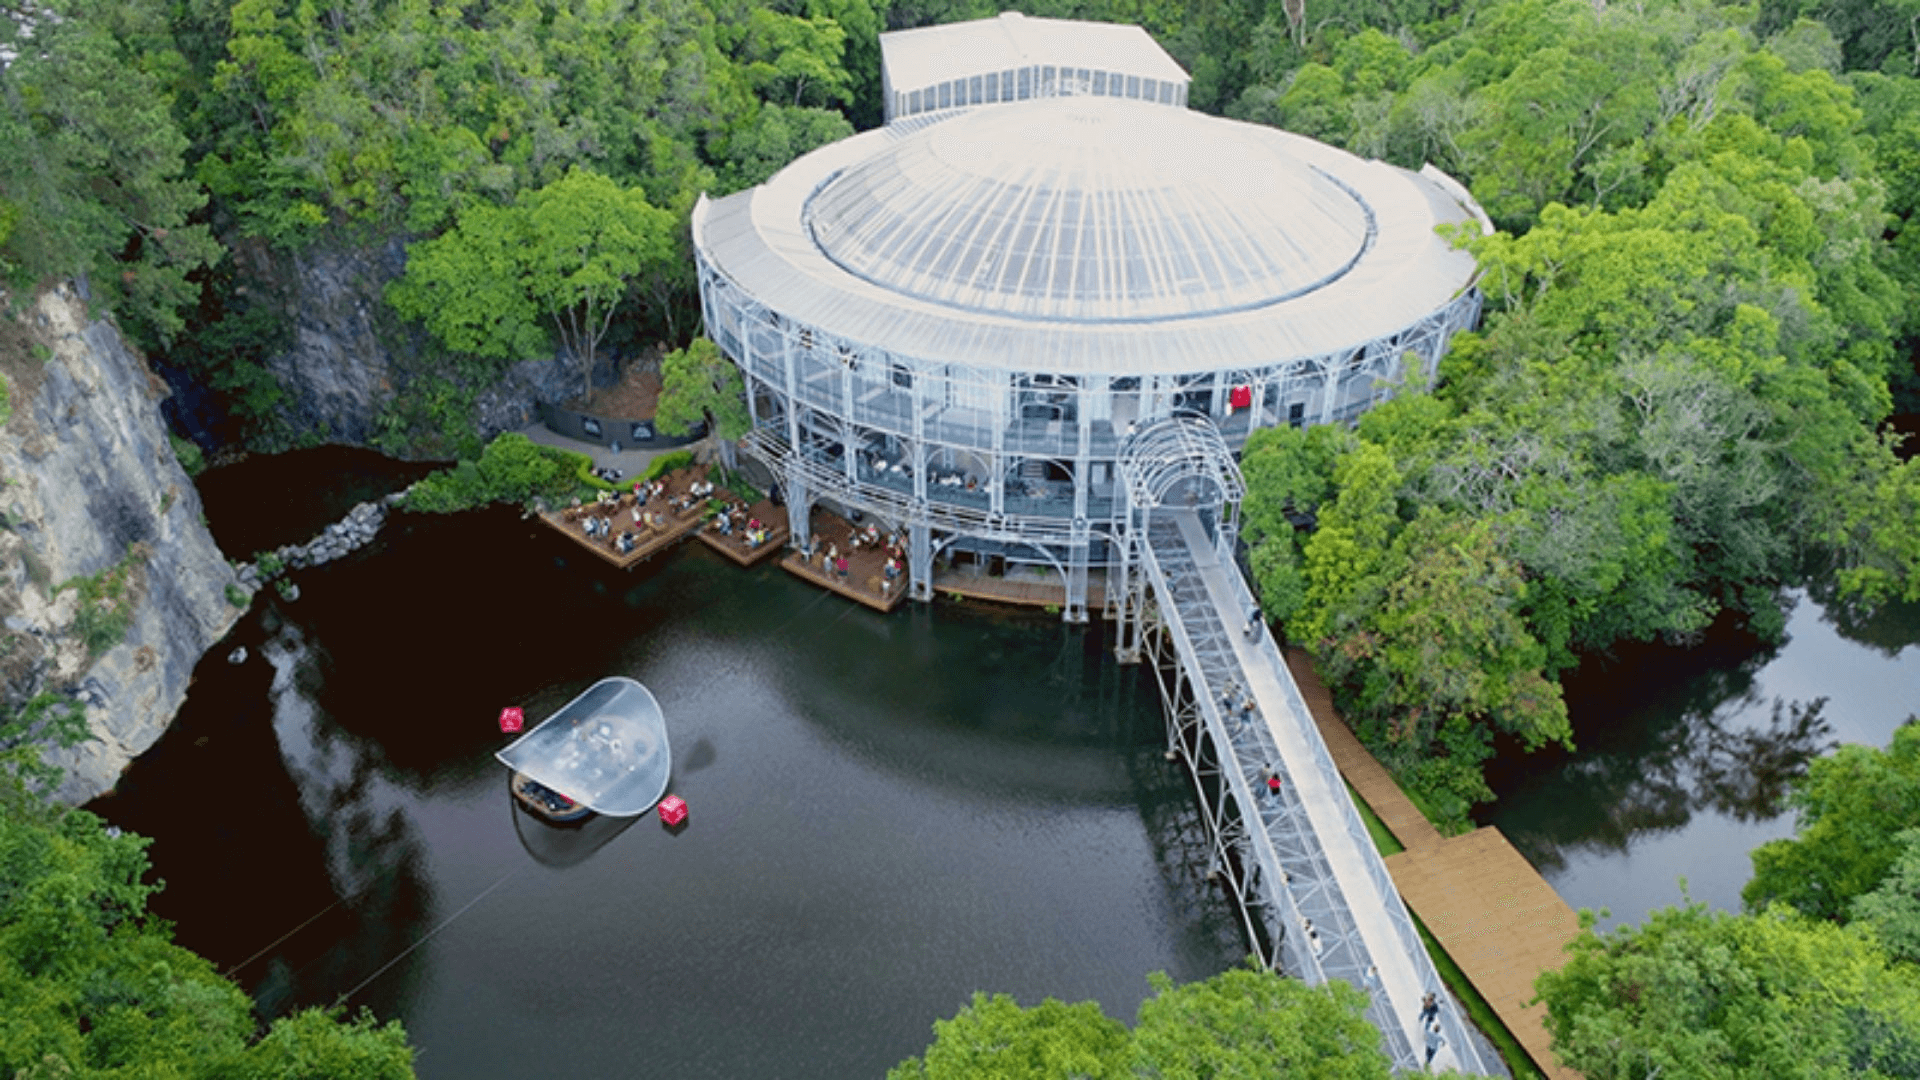 Imagem aérea da Ópera de Arame, mostrando sua estrutura metálica circular única que se sobressai sobre um lago. A natureza circundante é densa e exuberante, com árvores verdes que realçam a construção e a paisagem natural ao redor.